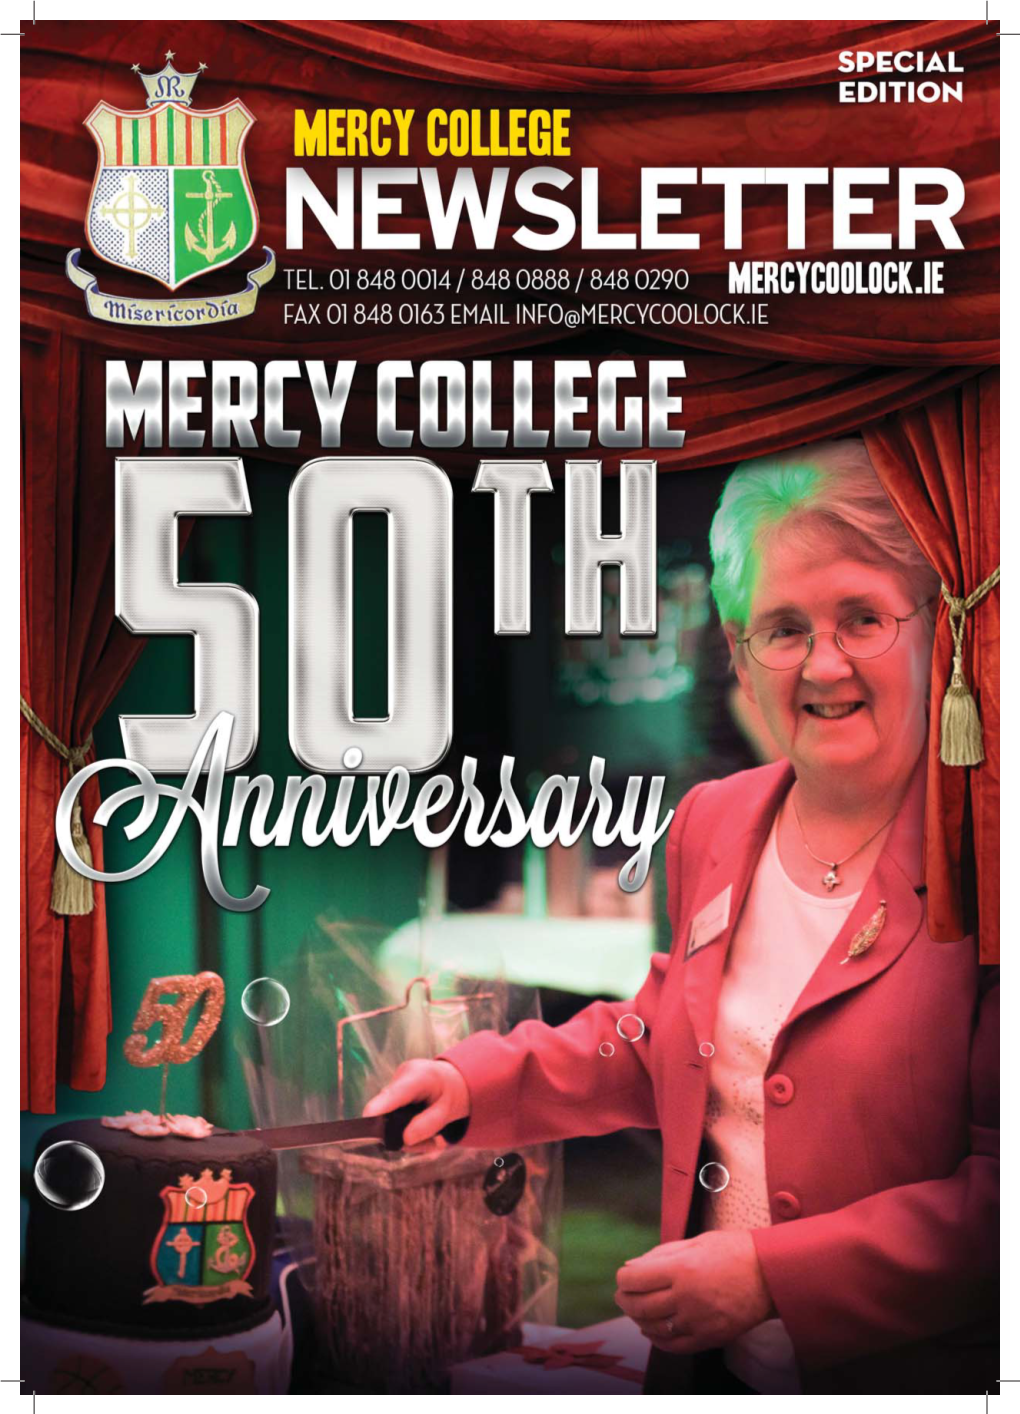 3167 Mercy College Newsletter Feb 2014 10.Indd